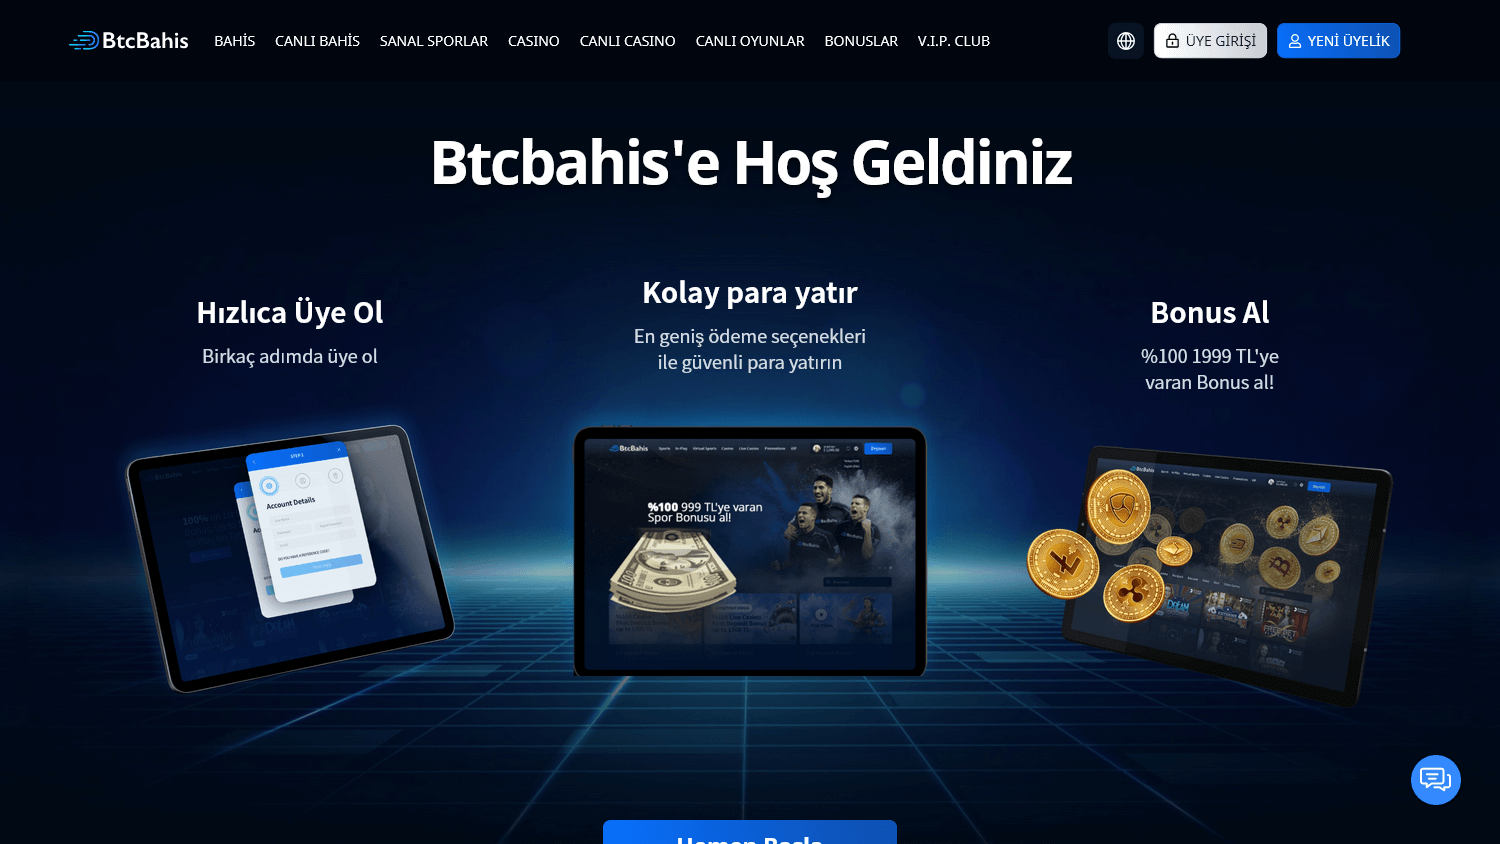 btcbahis_casino_homepage_desktop